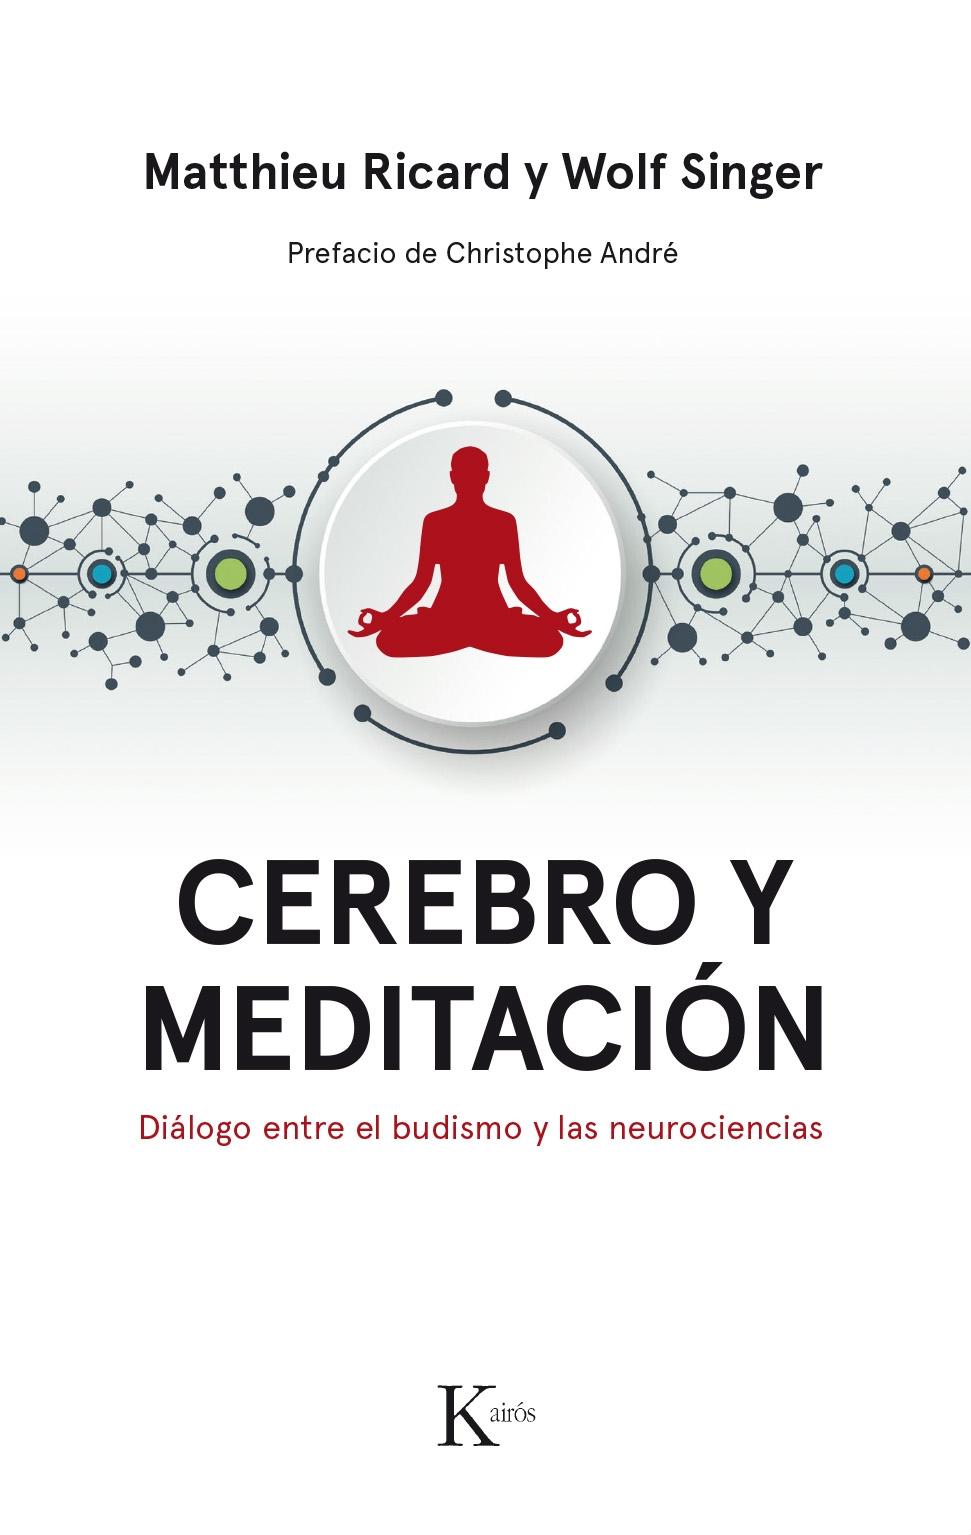 Cerebro y Meditación "Diálogo Entre el Budismo y las Neurociencias". 